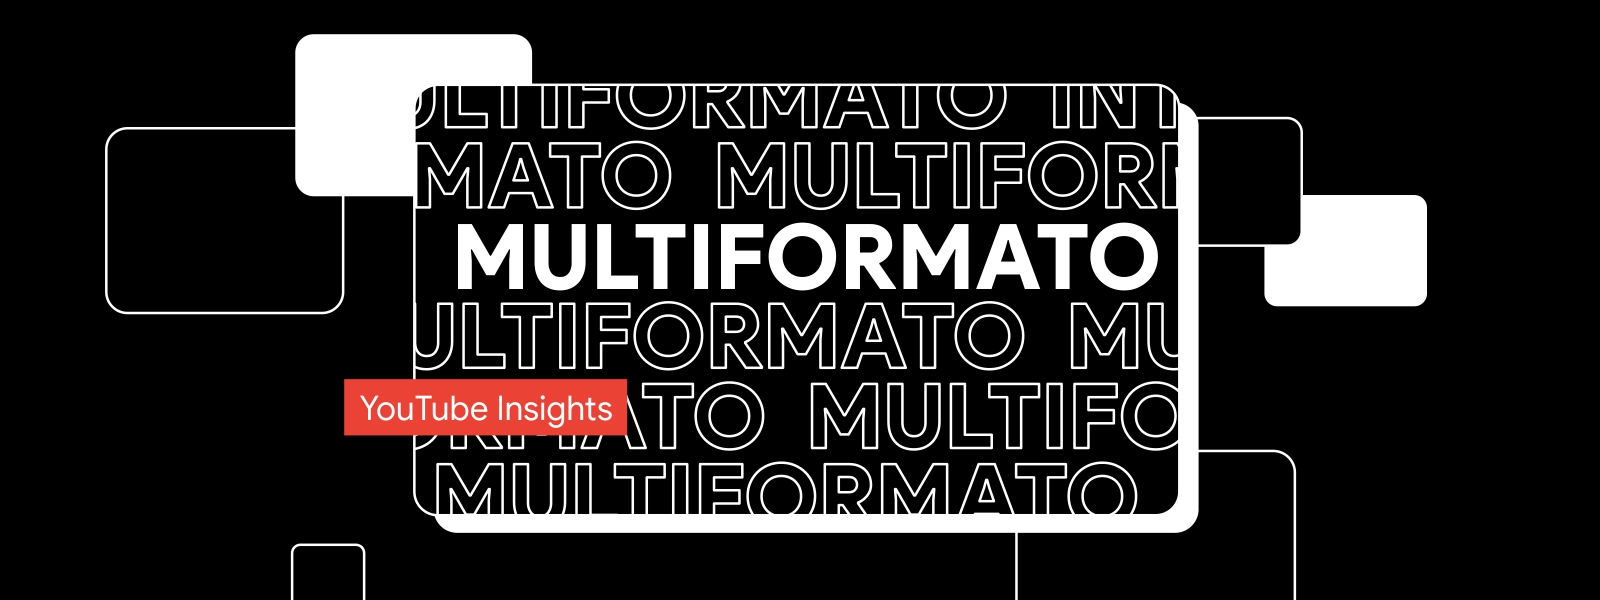 Una pantalla con fondo negro y letras en blanco que dicen “Multiformato”. Un cintillo con fondo rojo y letras blancas que dice “YouTube Insights”.